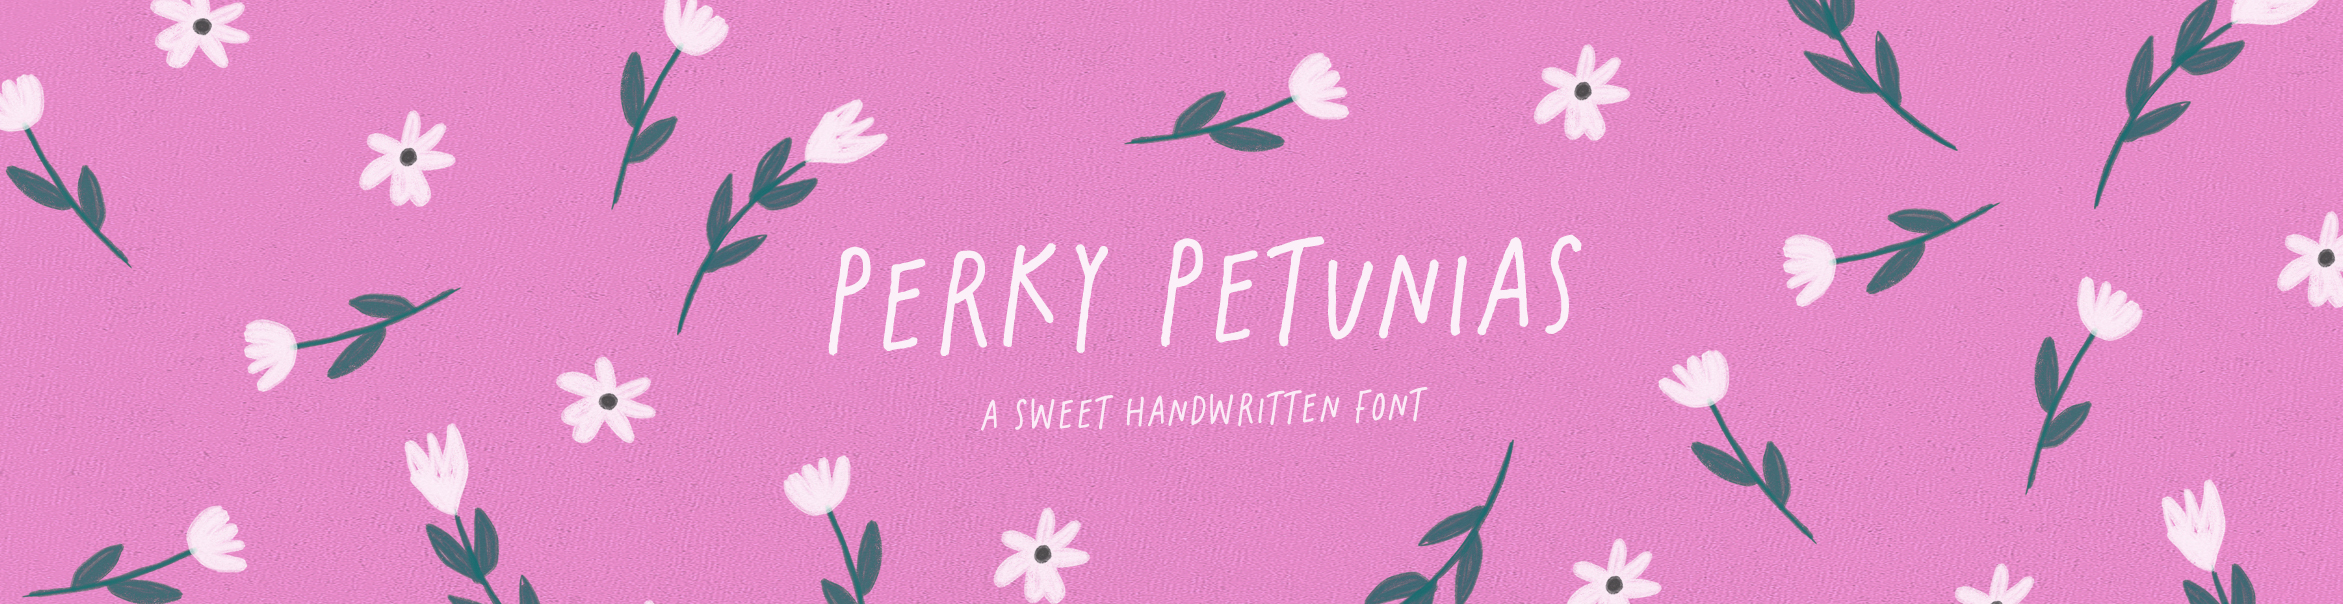 Perky Petunias